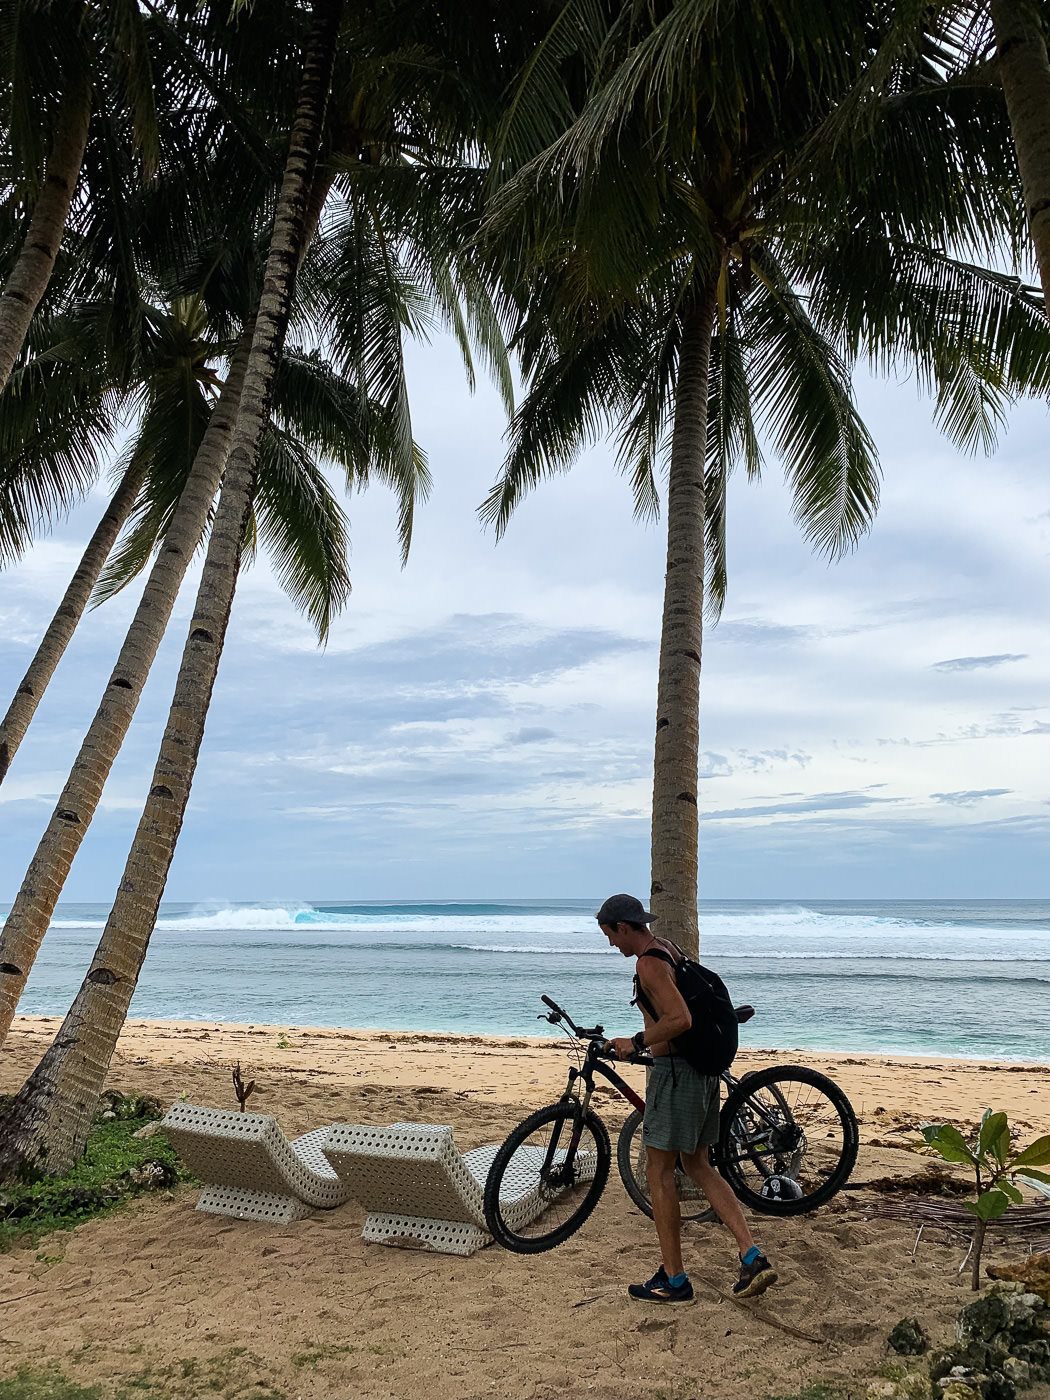 a man standing next to a bike on a beach.